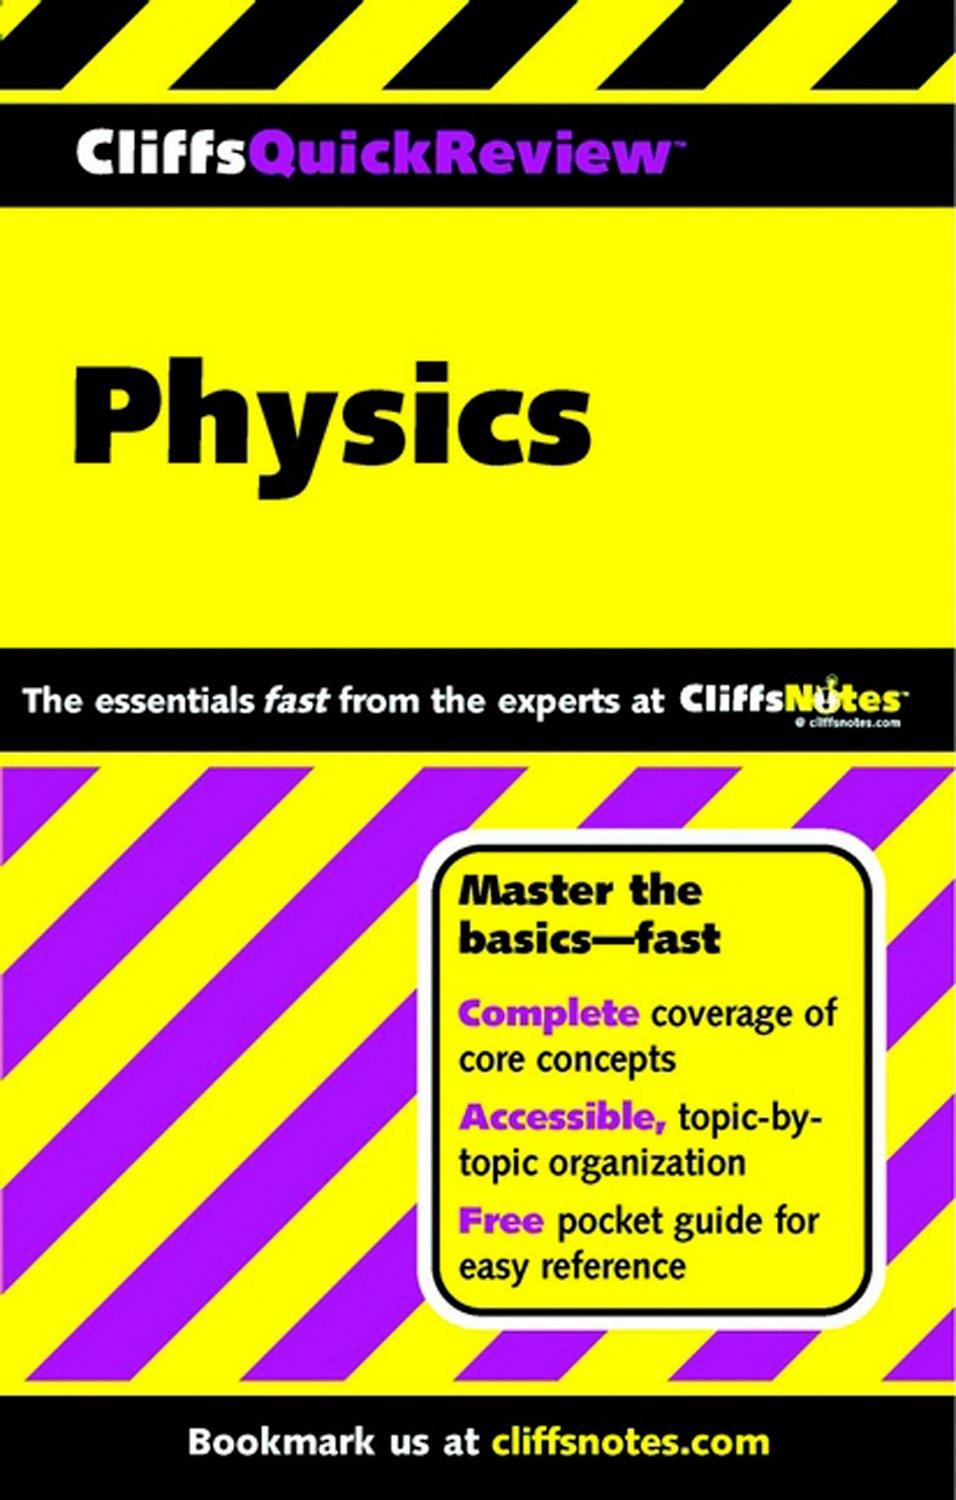 cliffsquickreview physics 1st edition scott adams, linda huetinck 0764563831, 978-0764563836